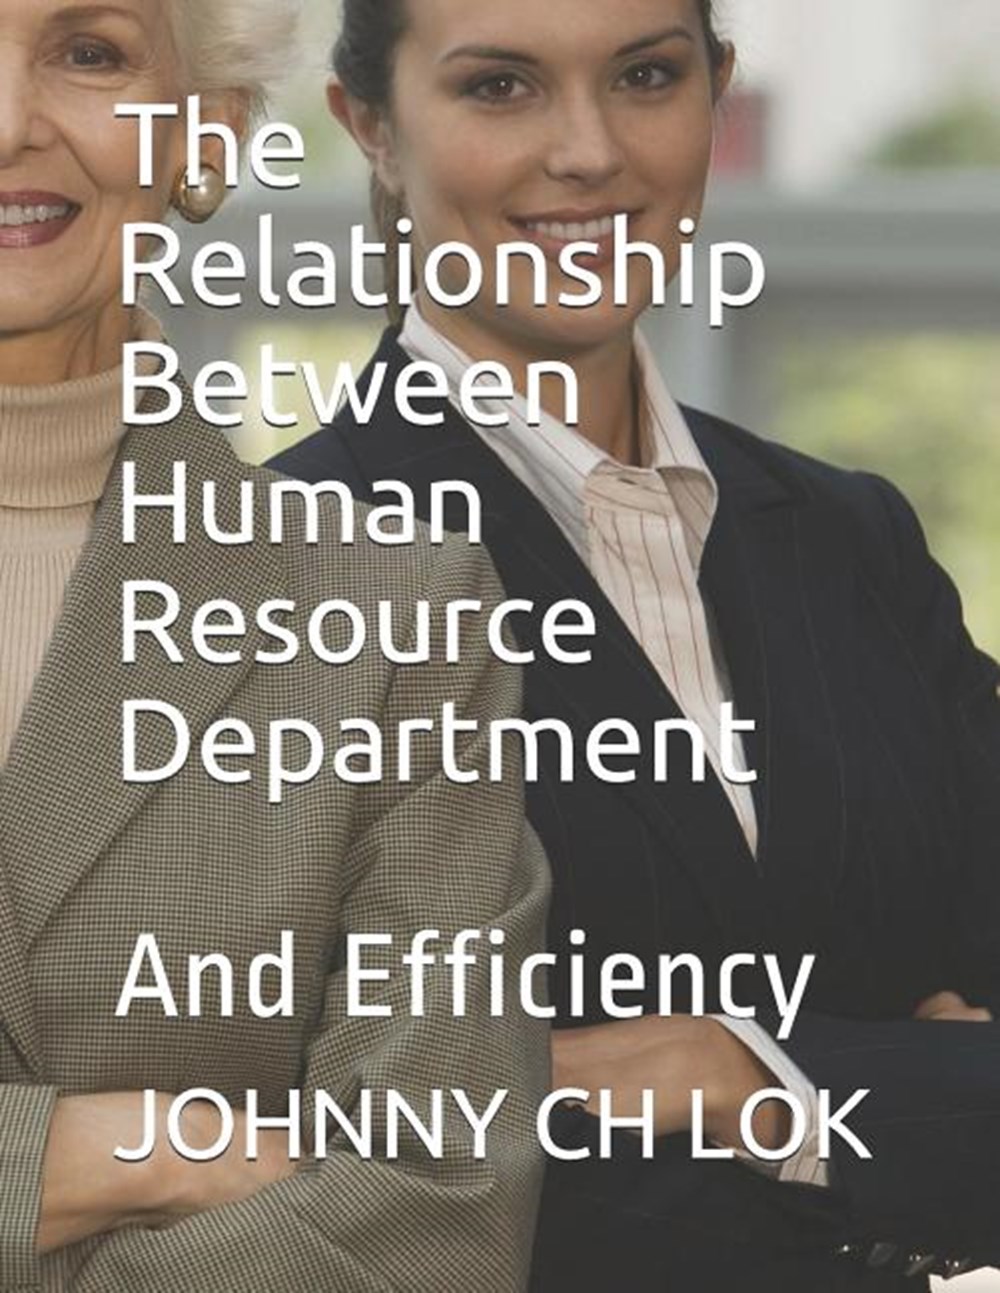 Relationship Between Human Resource Department: And Efficiency